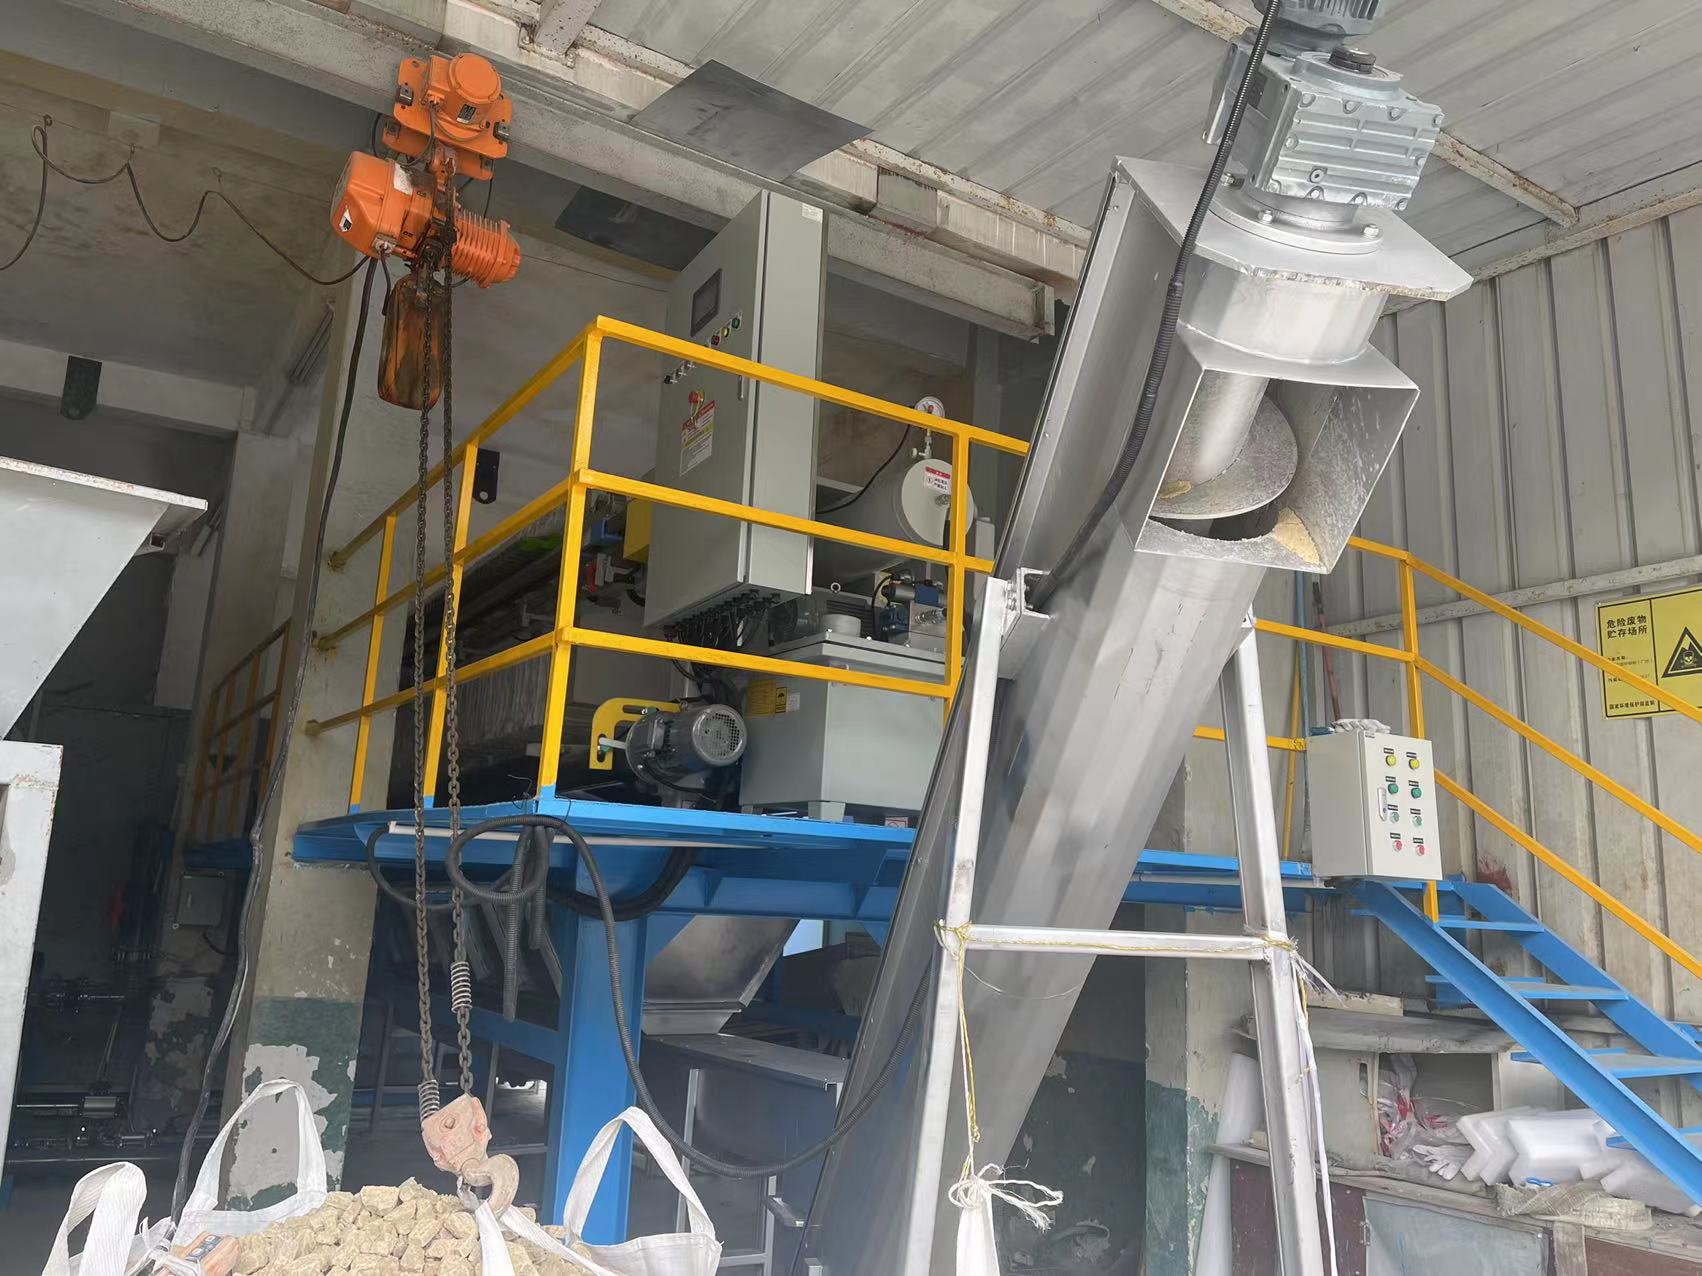 玹徹电镀锌钢板（广州）有限公司污水处理系统维修改造项目